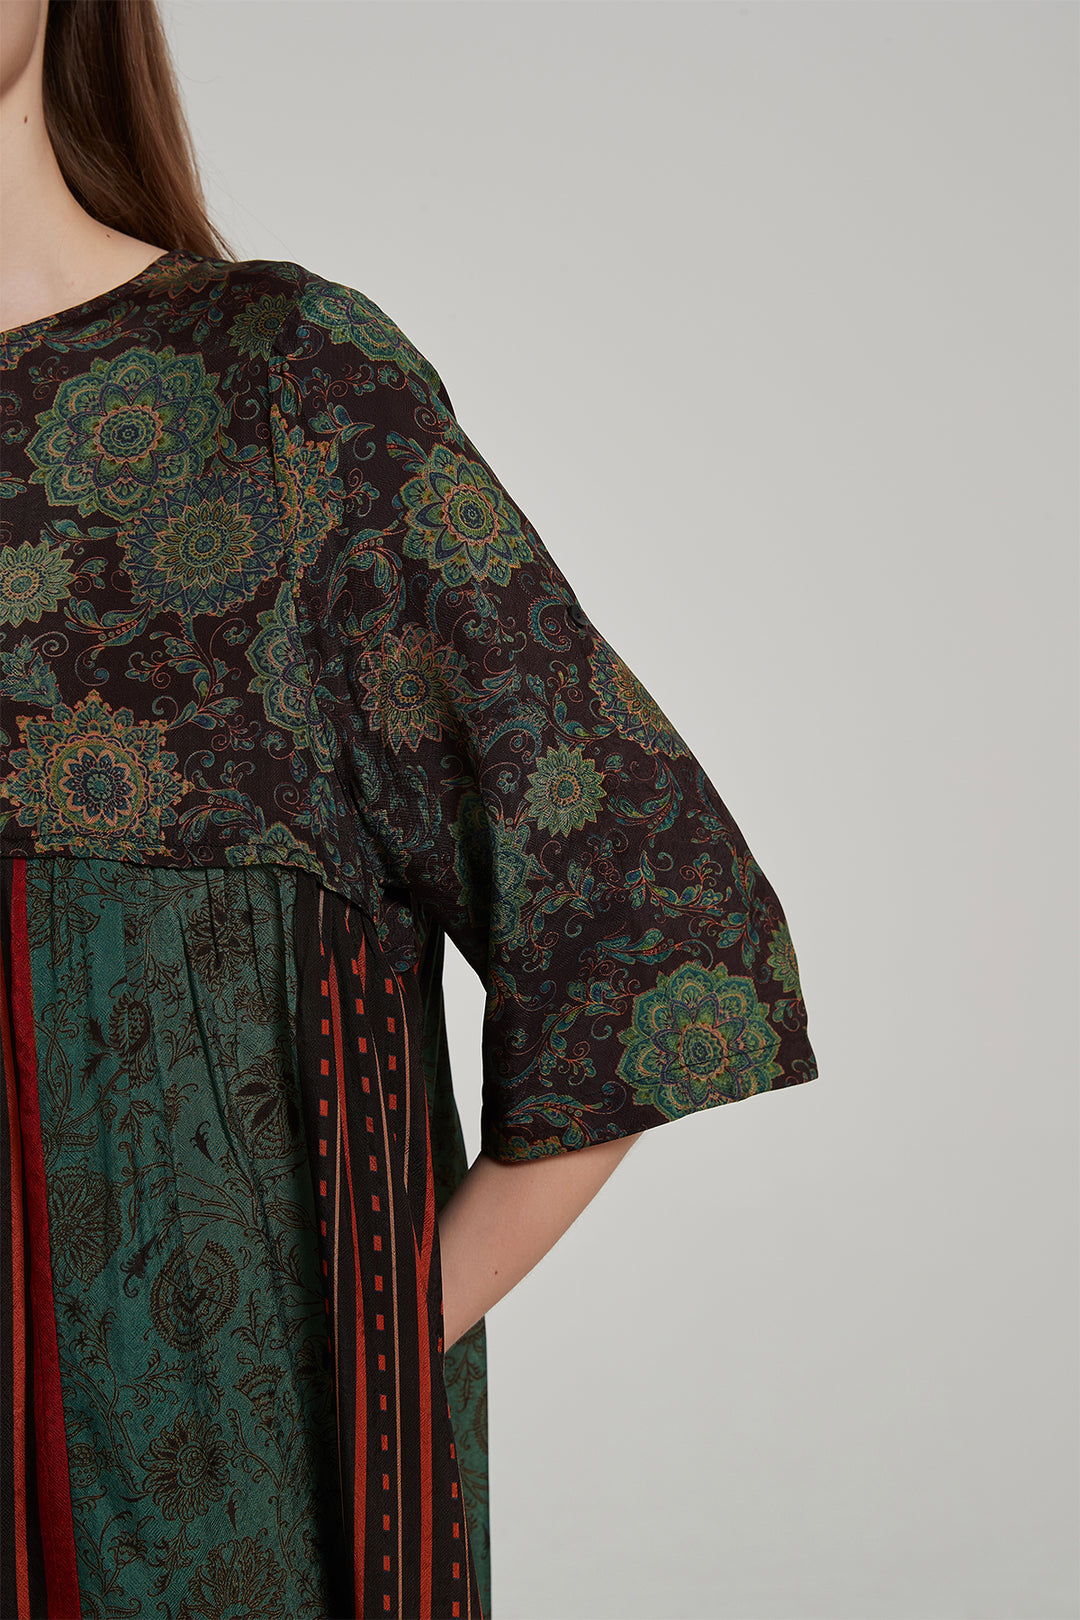 Vestido maxi de seda com estampa floral retrô